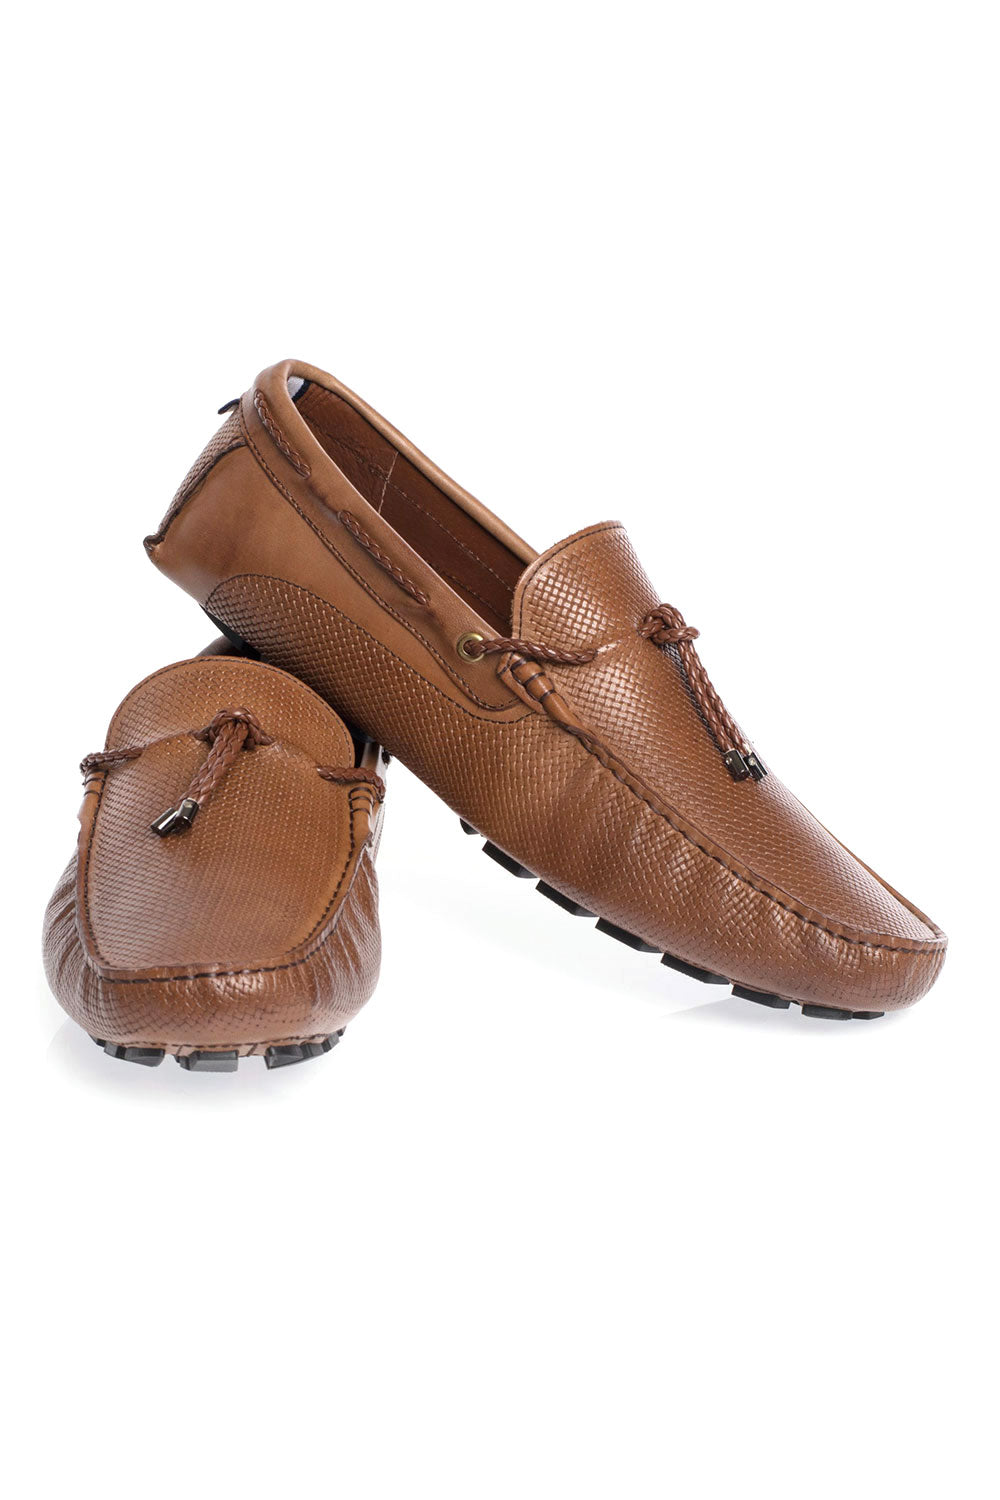 BARABAS Men leather loafer slip on black coffee Shoes SH4052